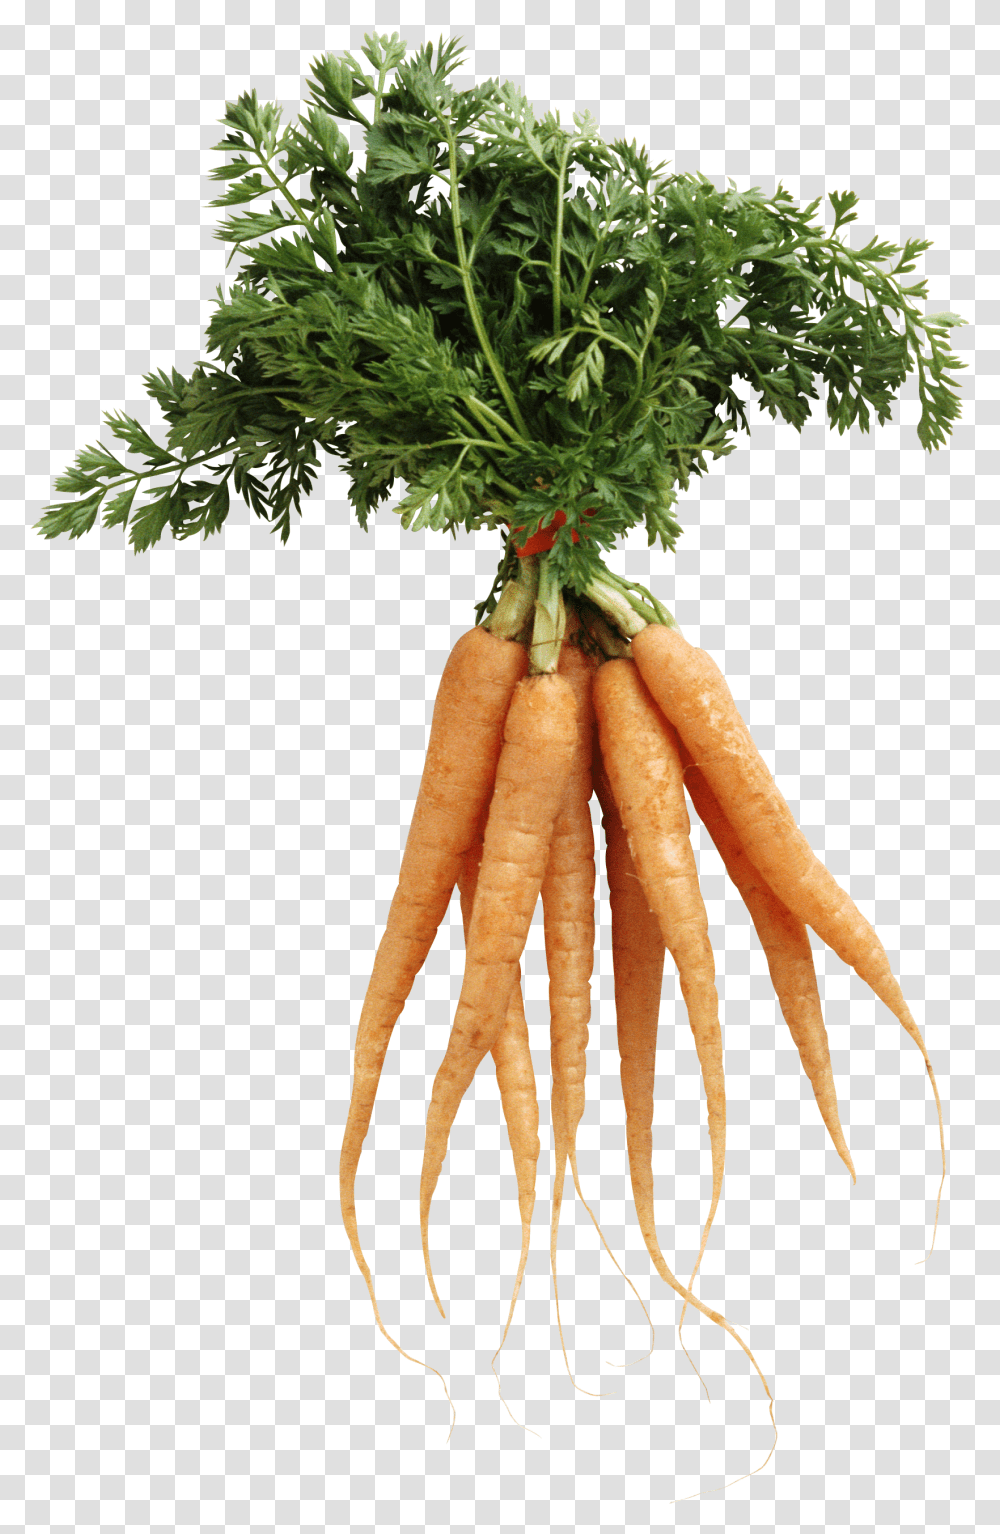 Carrot, Vegetable, Plant, Food, Lobster Transparent Png